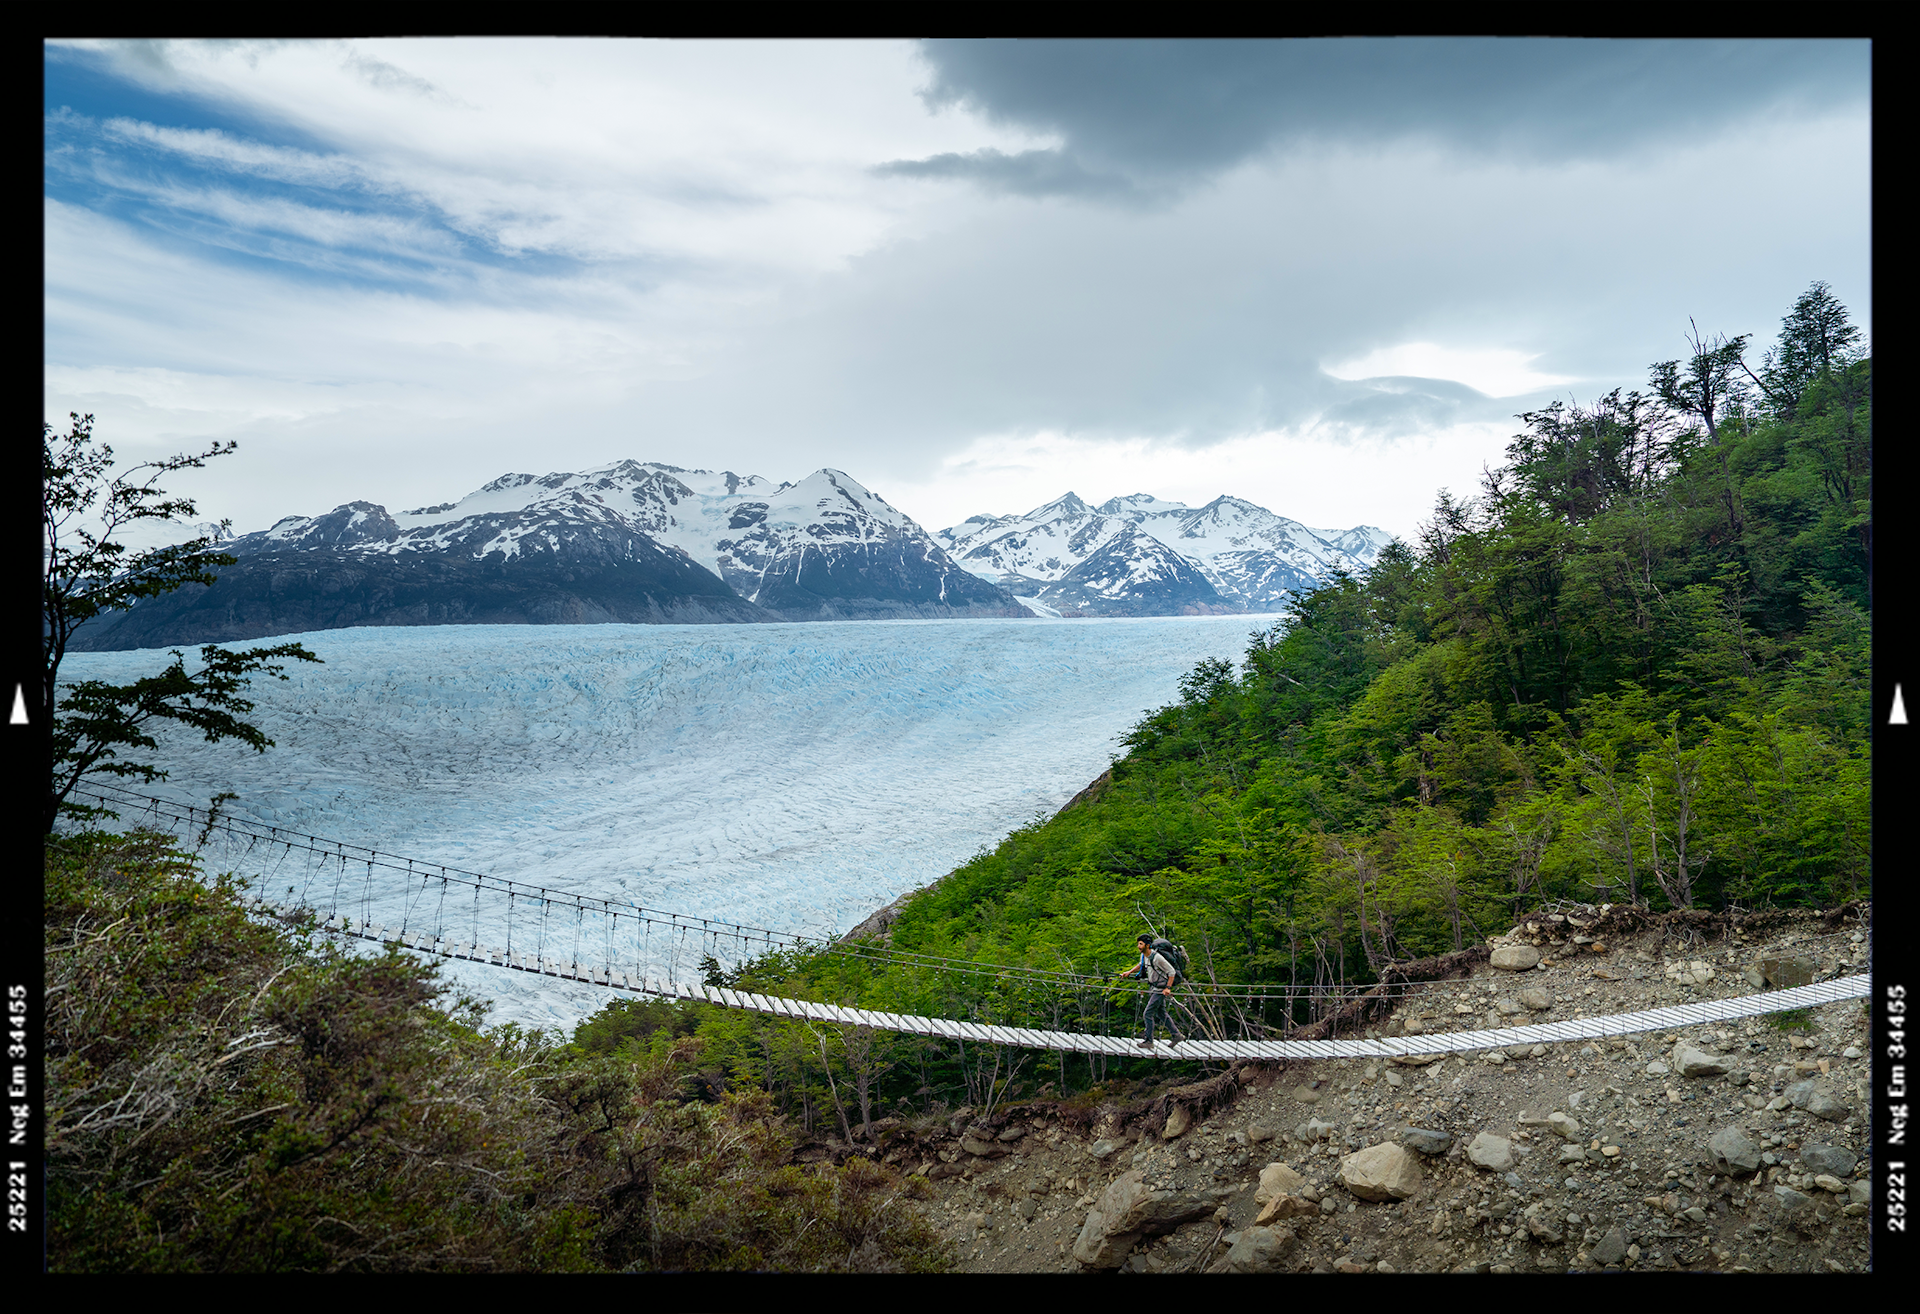 Hikers crossing a suspension bridge near Glacier Valley in Patagonia